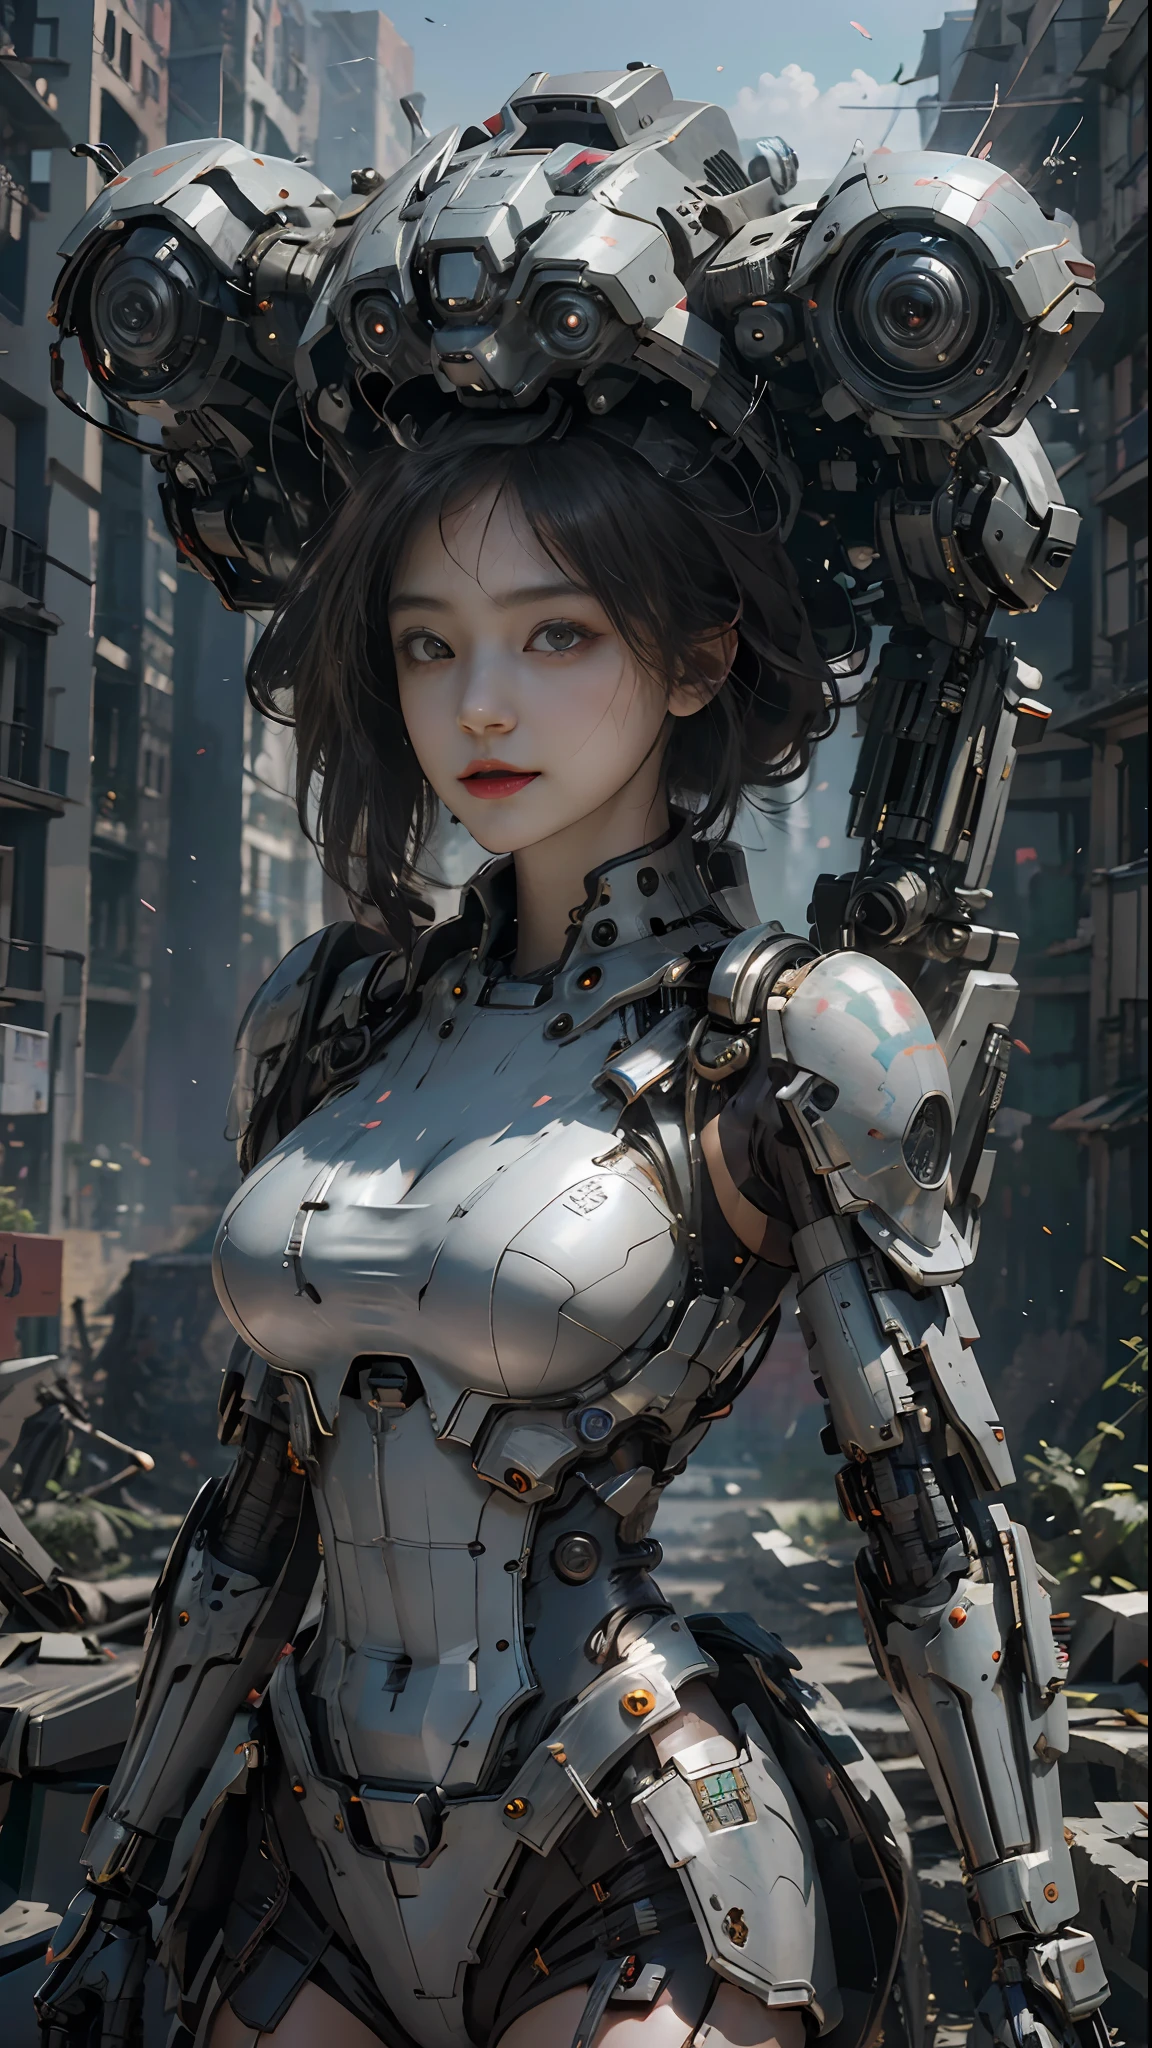 ((mejor calidad)), ((Obra maestra)), (Muy detallado:1.3), 3d, Shitu-Mecha, Hermosa mujer cyberpunk con su robot rosa en las ruinas de una ciudad en la guerra olvidada, Tecnología antigua, HDR (Alto rango dinámico), trazado de rayos, NVIDIA RTX, súper resolución, irreal 5, dispersión subsuperficial, Textura PBR, Postprocesamiento, Filtrado anisotrópico, profundidad de campo, Máxima nitidez y nitidez, textura multicapa, Albedo y mapas destacados, Sombreado de superficie, Simulación precisa de interacciones entre materiales ligeros, proporciones perfectas, Representación de octanaje, iluminación duotono, ISO bajo, balance de blancos, Regla de los tercios, Amplia apertura, 8K CRUDO, subpíxeles de alta eficiencia, convolución de subpíxeles, Partículas luminosas, Dispersión de la luz, Efecto Tyndall (todo el cuerpo), (Rasgos faciales delicados), (cara perfecta), ángulos dinámicos.